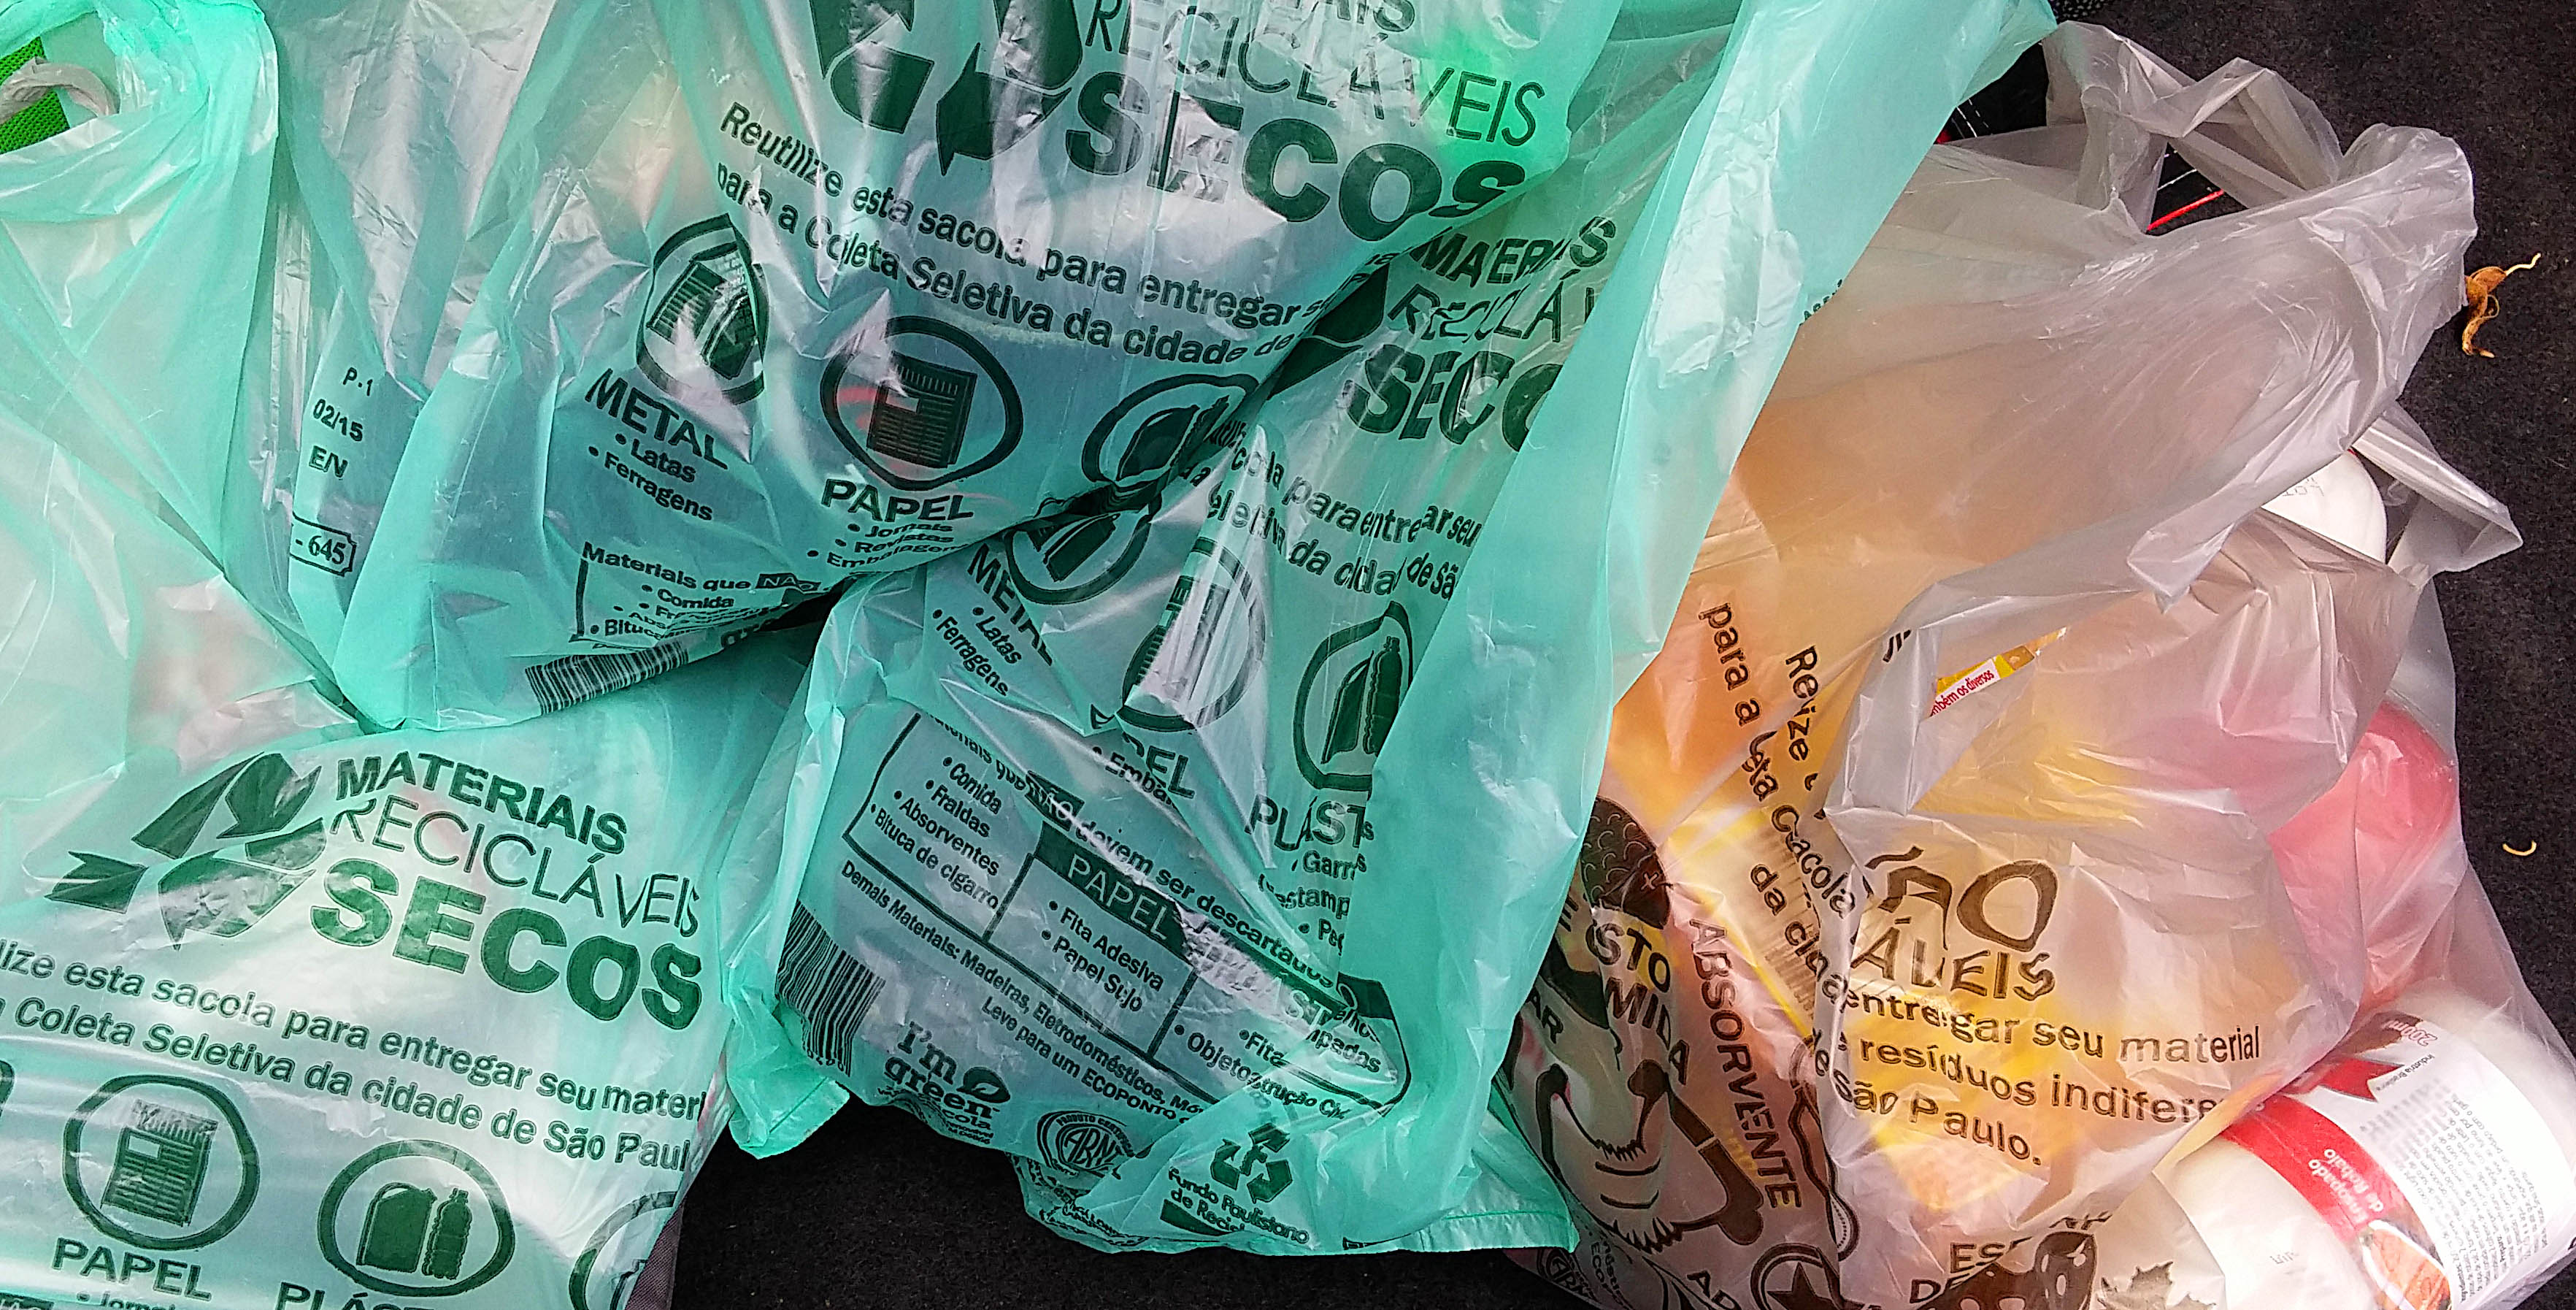 Supermercados do RJ não podem mais dar sacolas plásticas